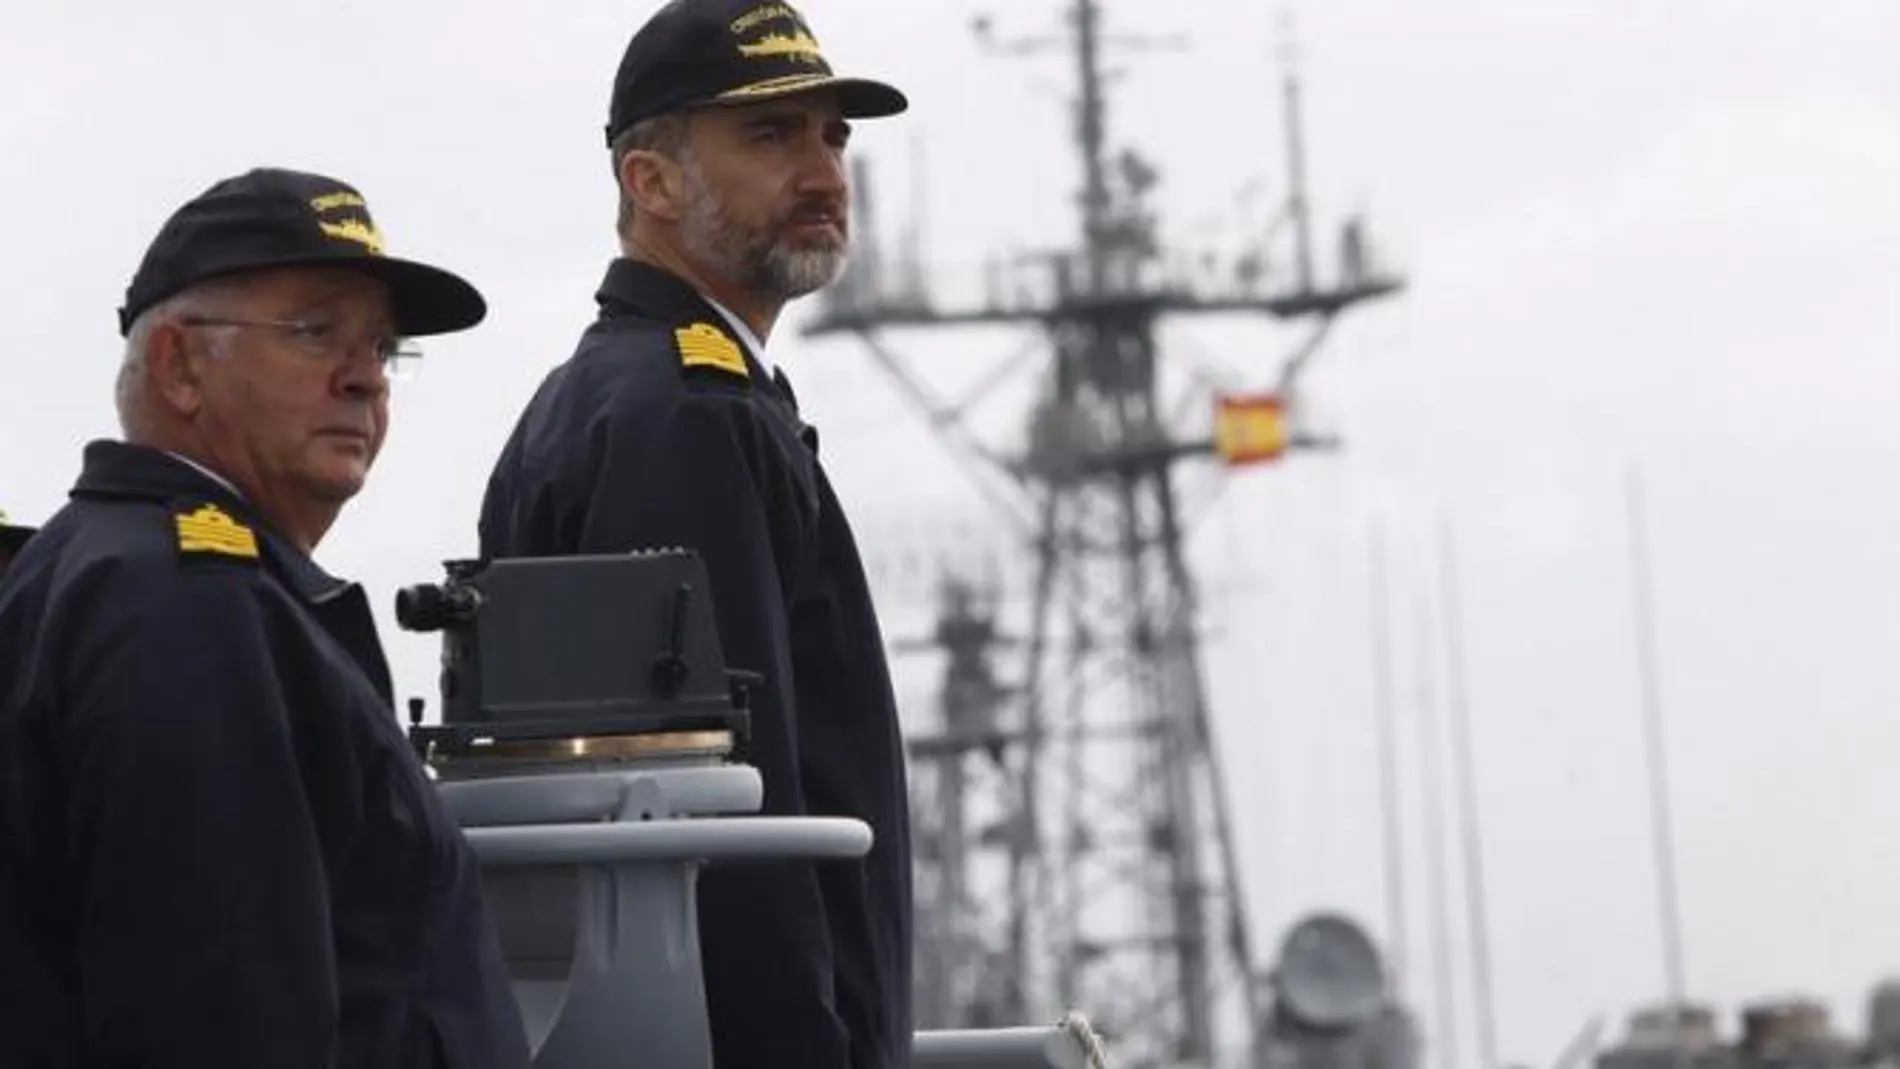 El Rey Felipe VI ha hecho este miércoles su primera visita como monarca a una unidad de la Armada española, la fragata Cristóbal Colón